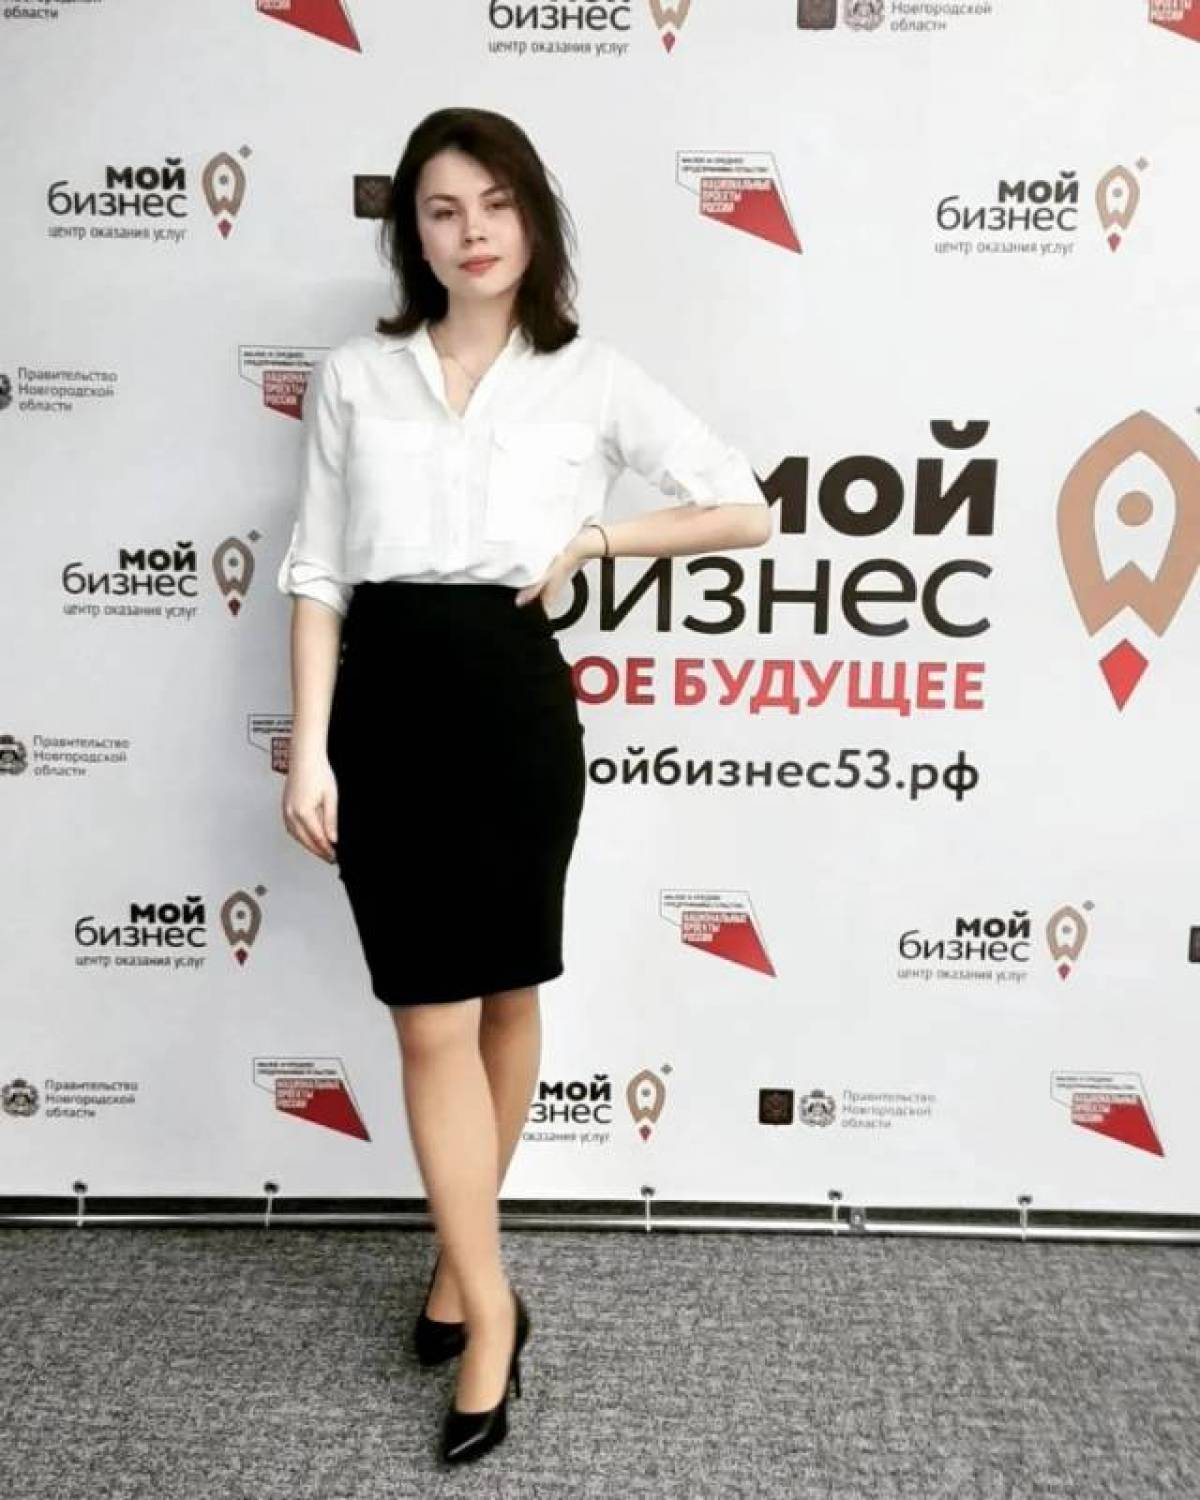 Мария Пономарёва: "Я будущий медик, поэтому понимаю, к каким негативным последствиям могут привести нарушения осанки".